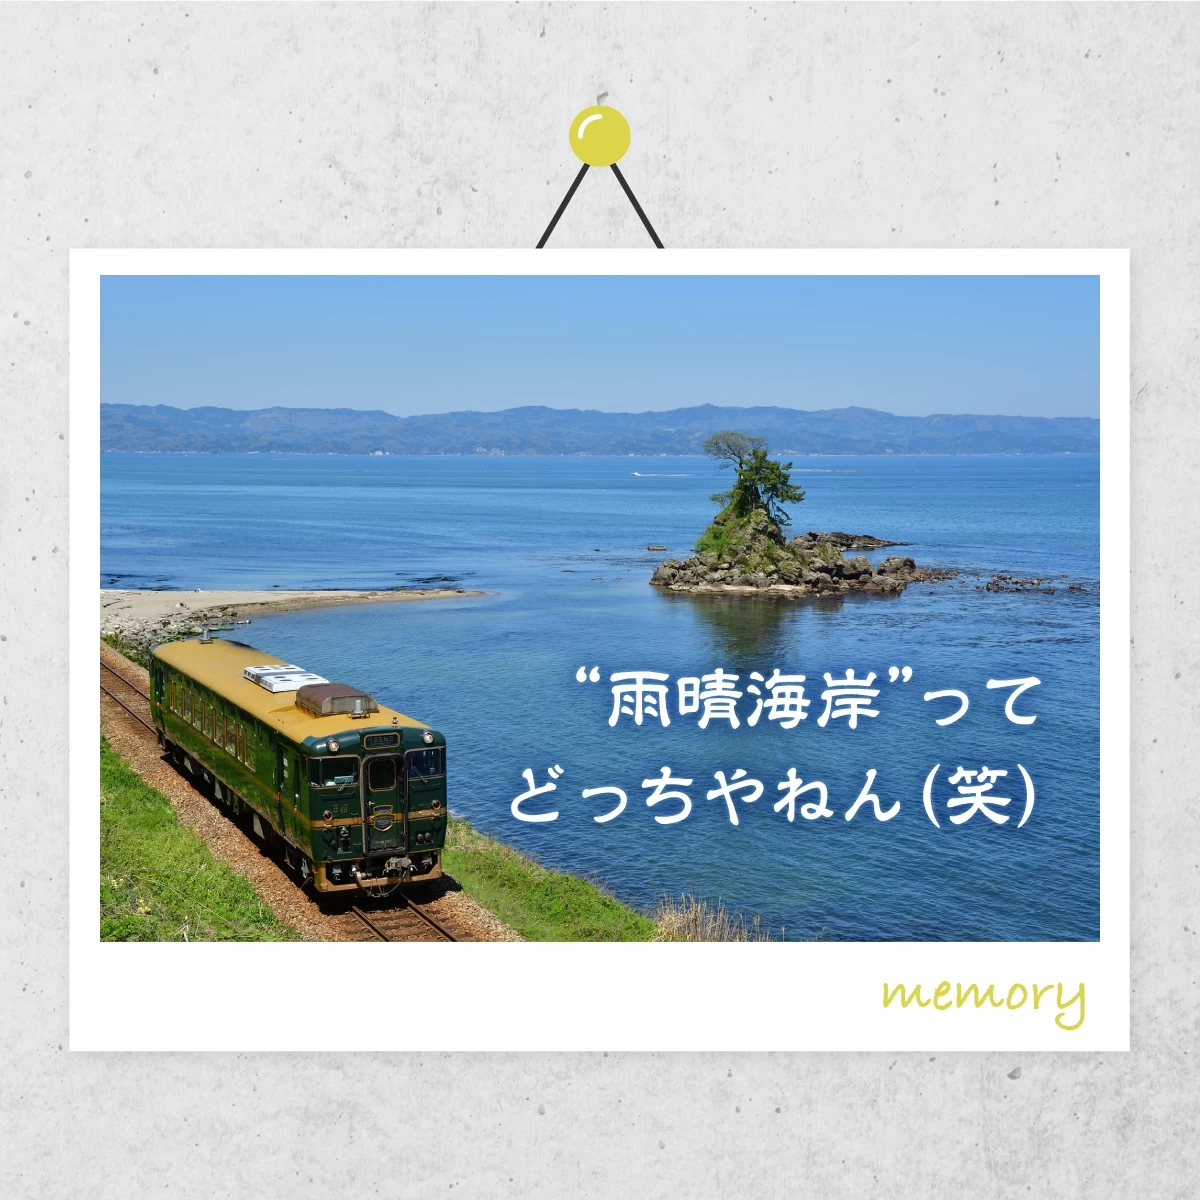 富山・高岡へ女子旅。観光列車「べるもんた」に乗って瑞龍寺へ